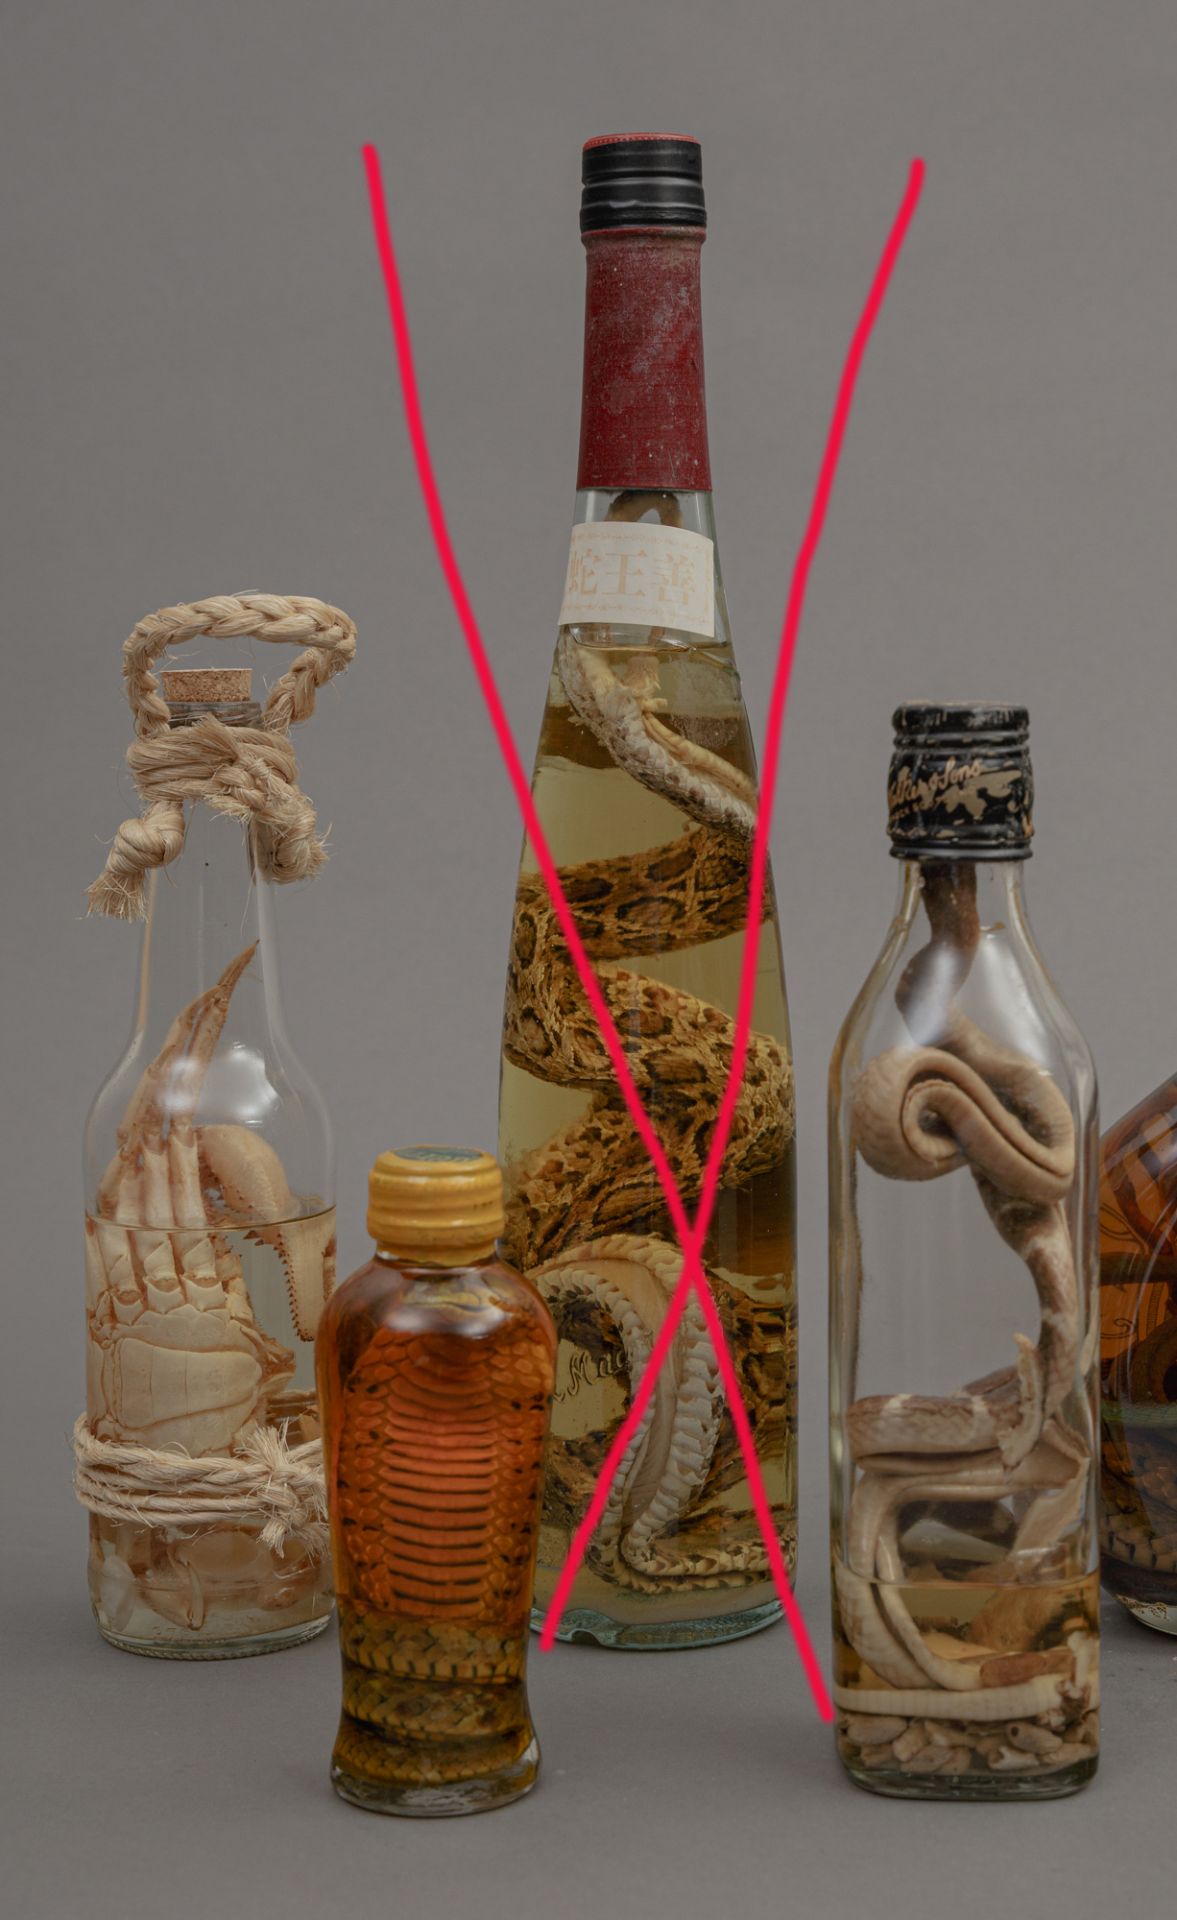 Kuriosität aus Ostasien, 6 Flaschen Schlangenwein - Image 2 of 2